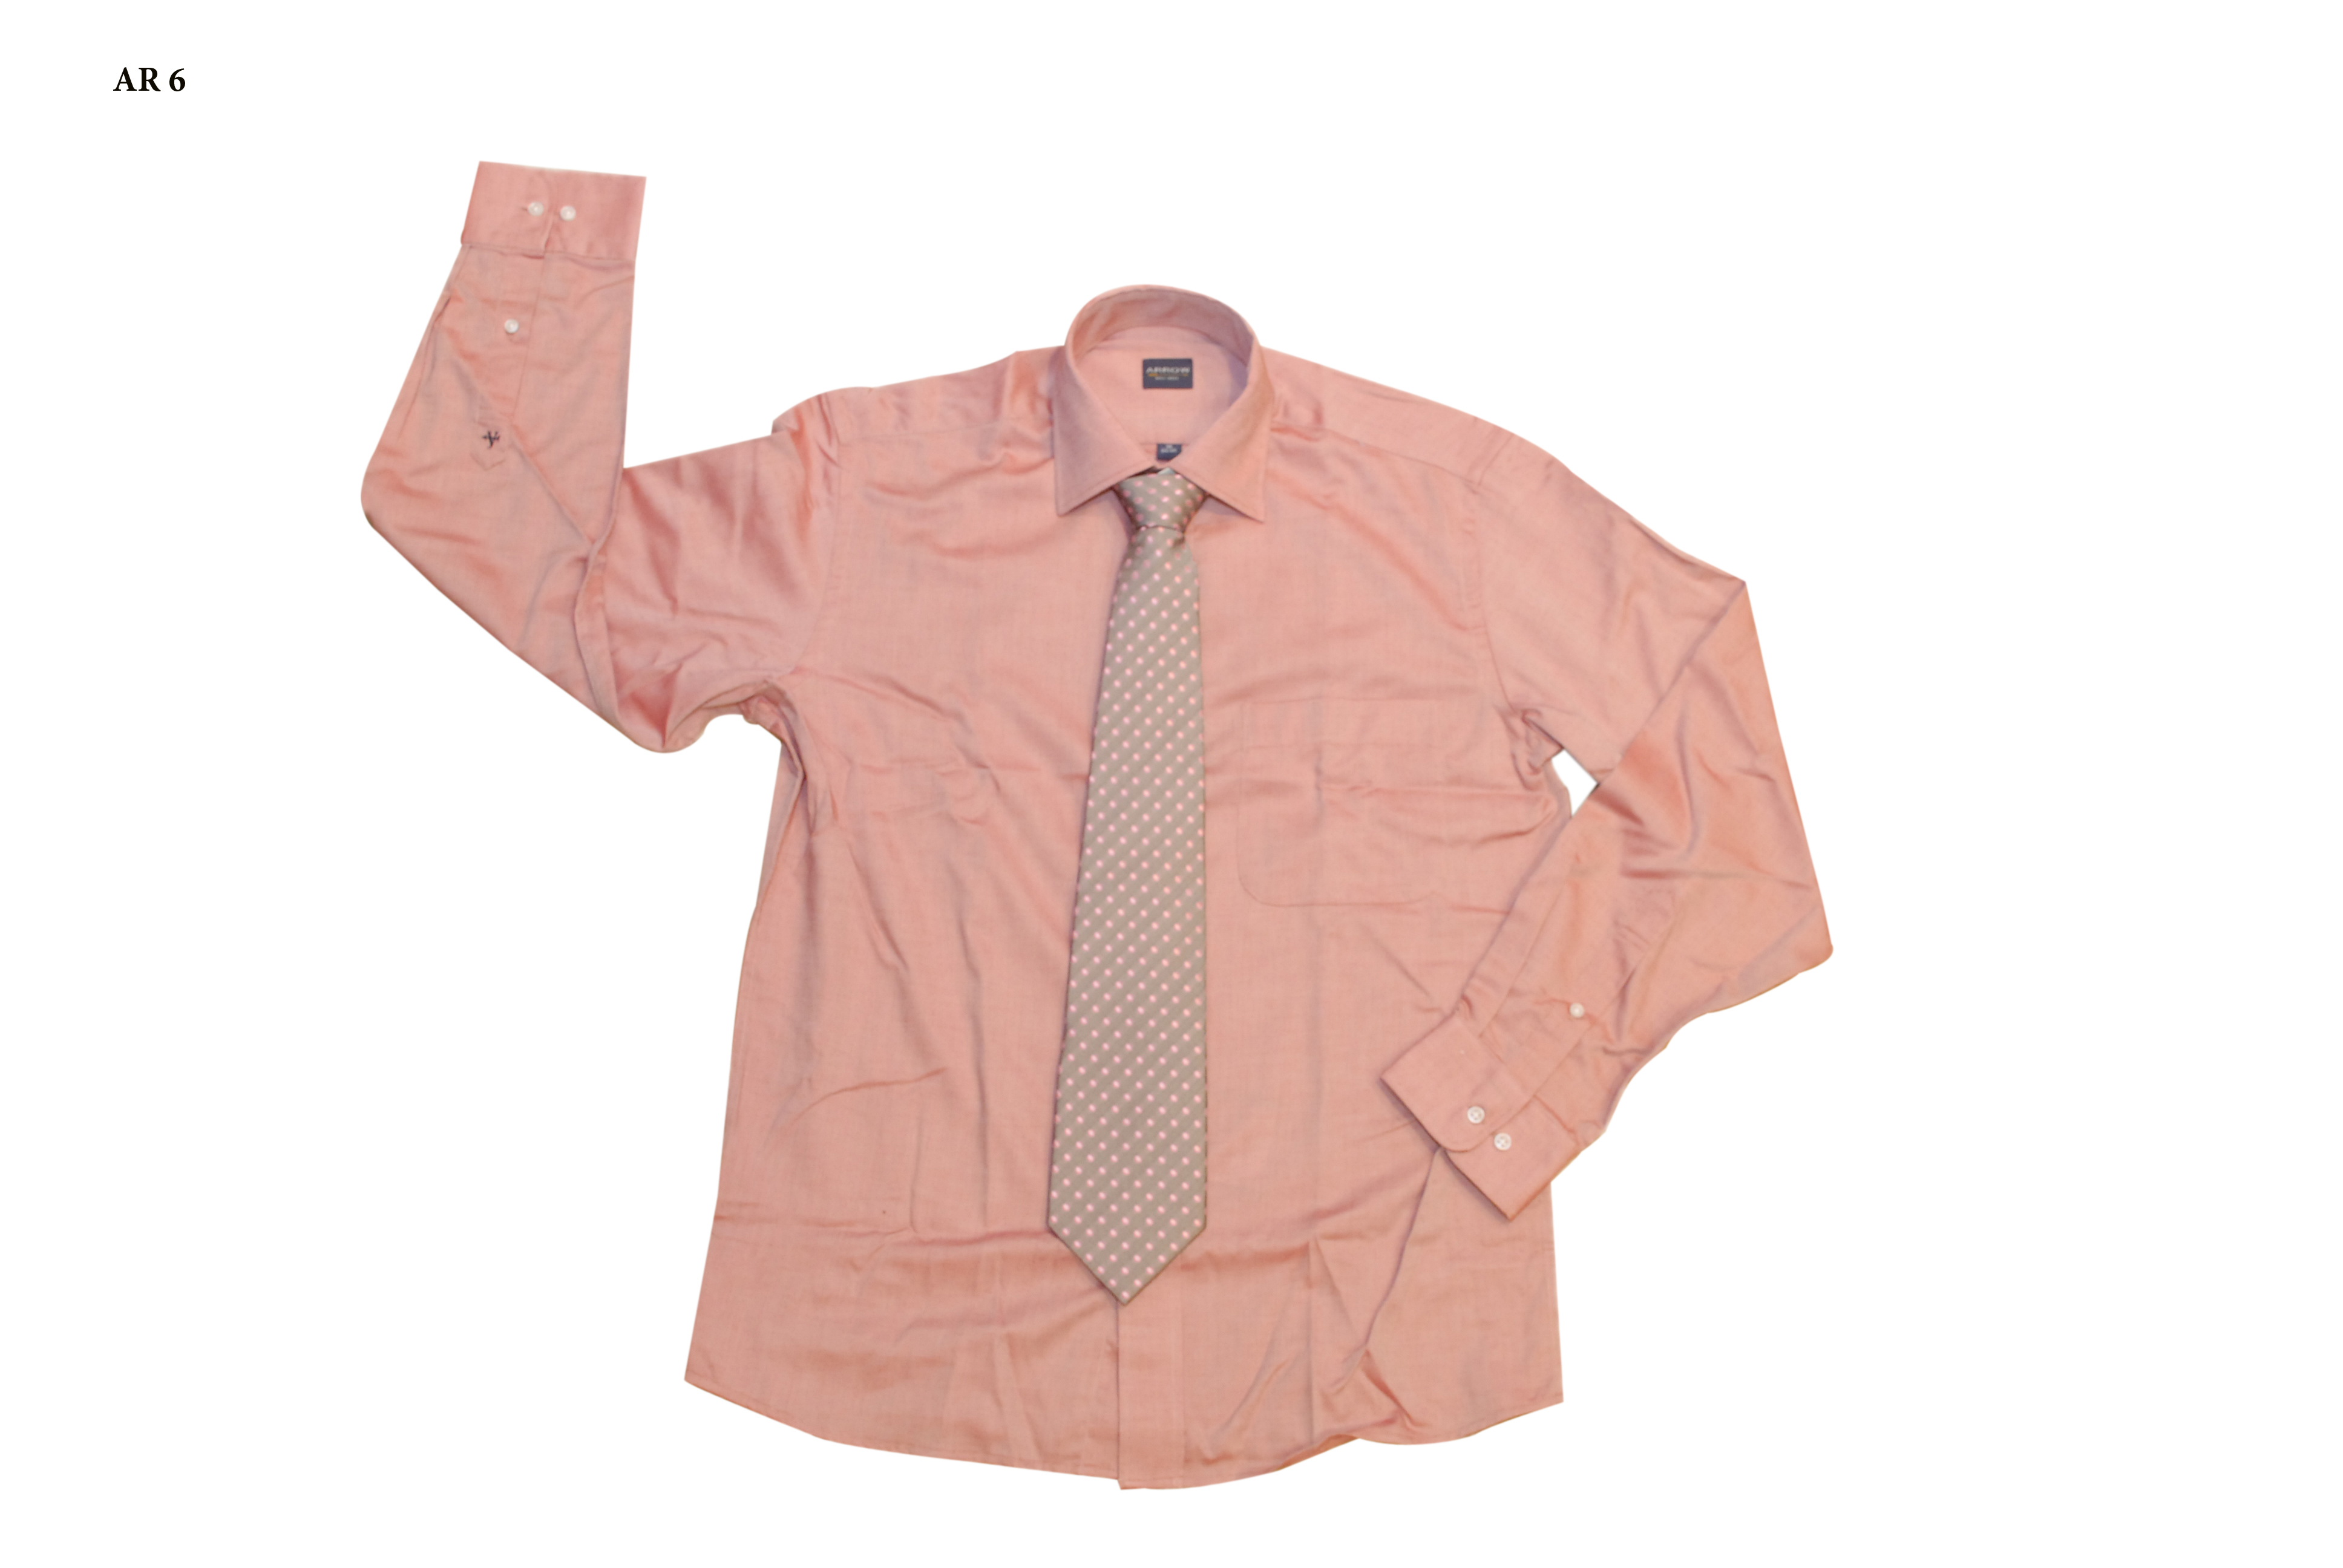 Arrow Shirt + Tie